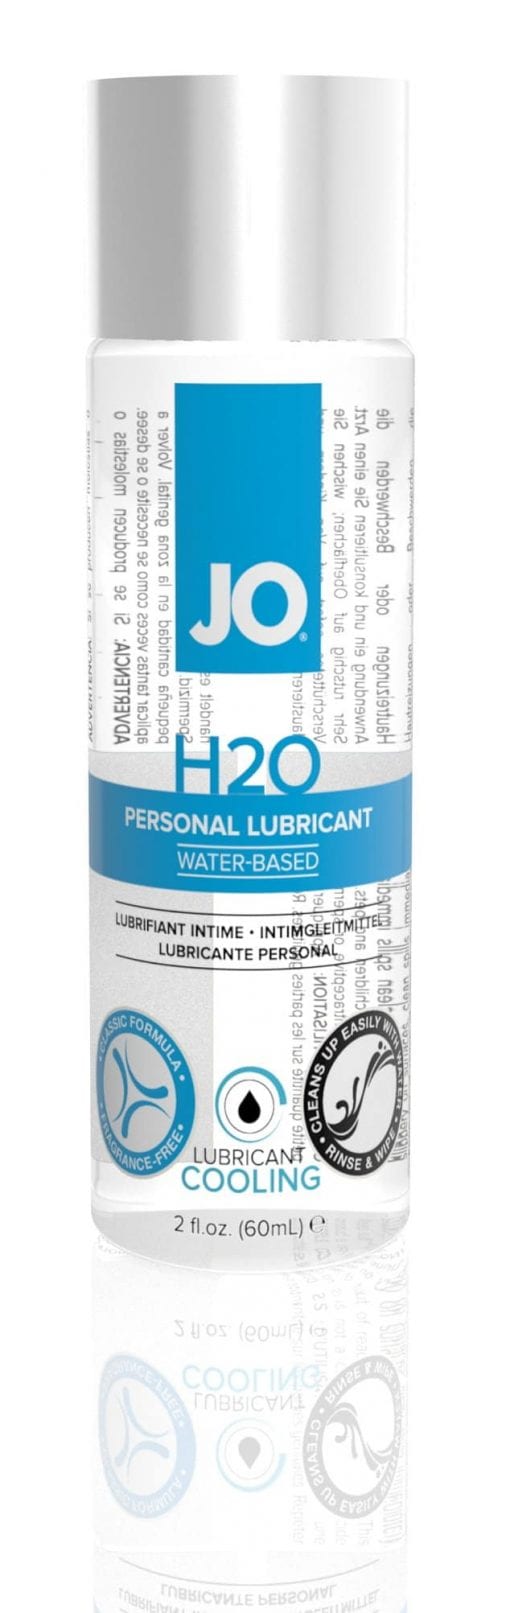 JO H2O Cool 2 Oz / 60 ml